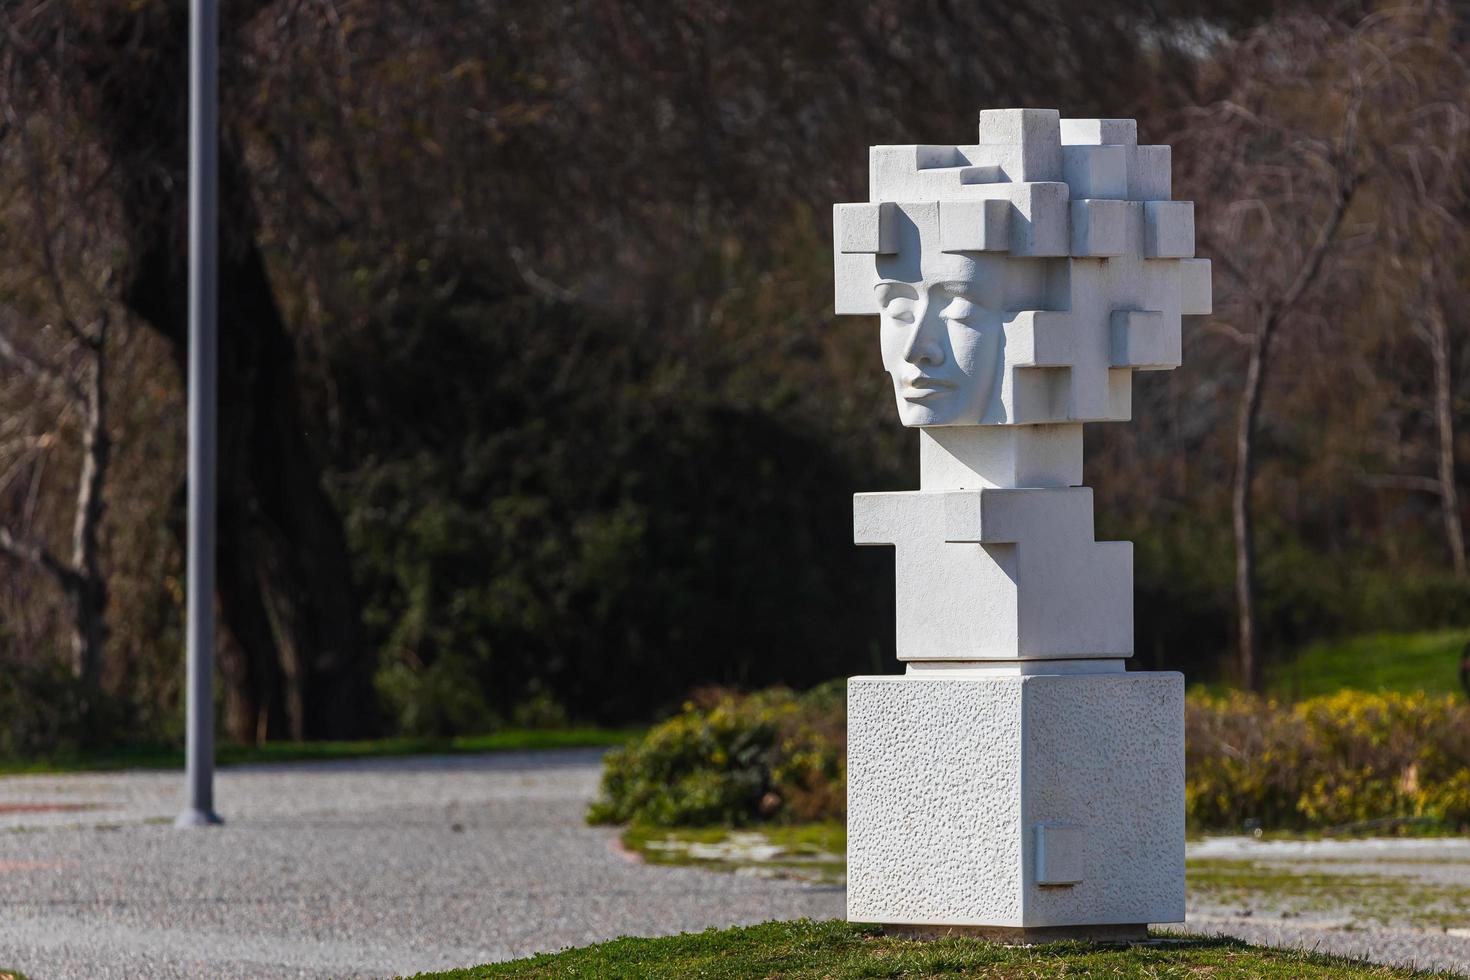 sida kalkon mars 01 2022 modern skulptur från enkla geometriska former i parken foto